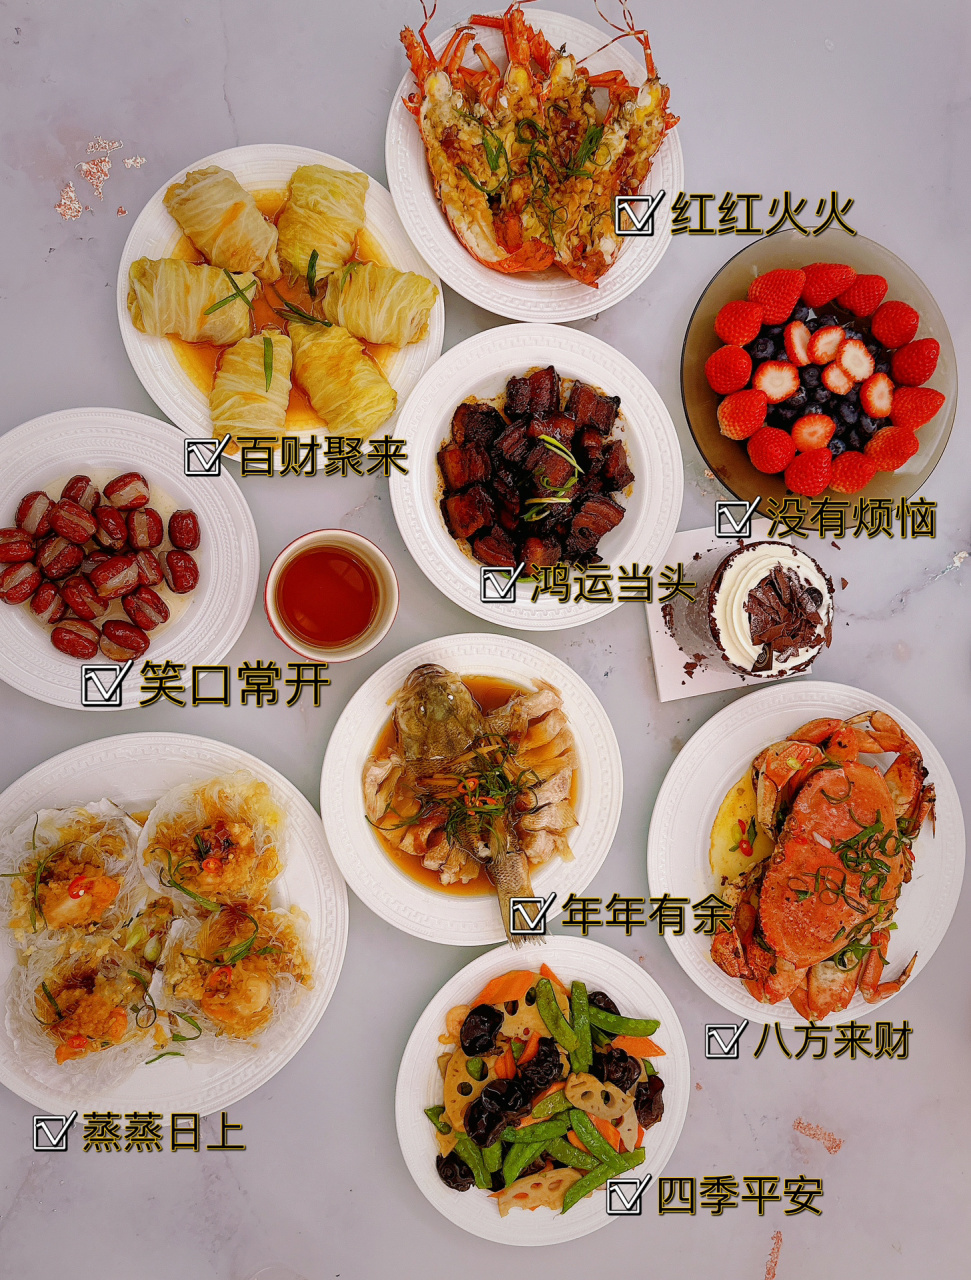 生日宴菜谱 中餐图片